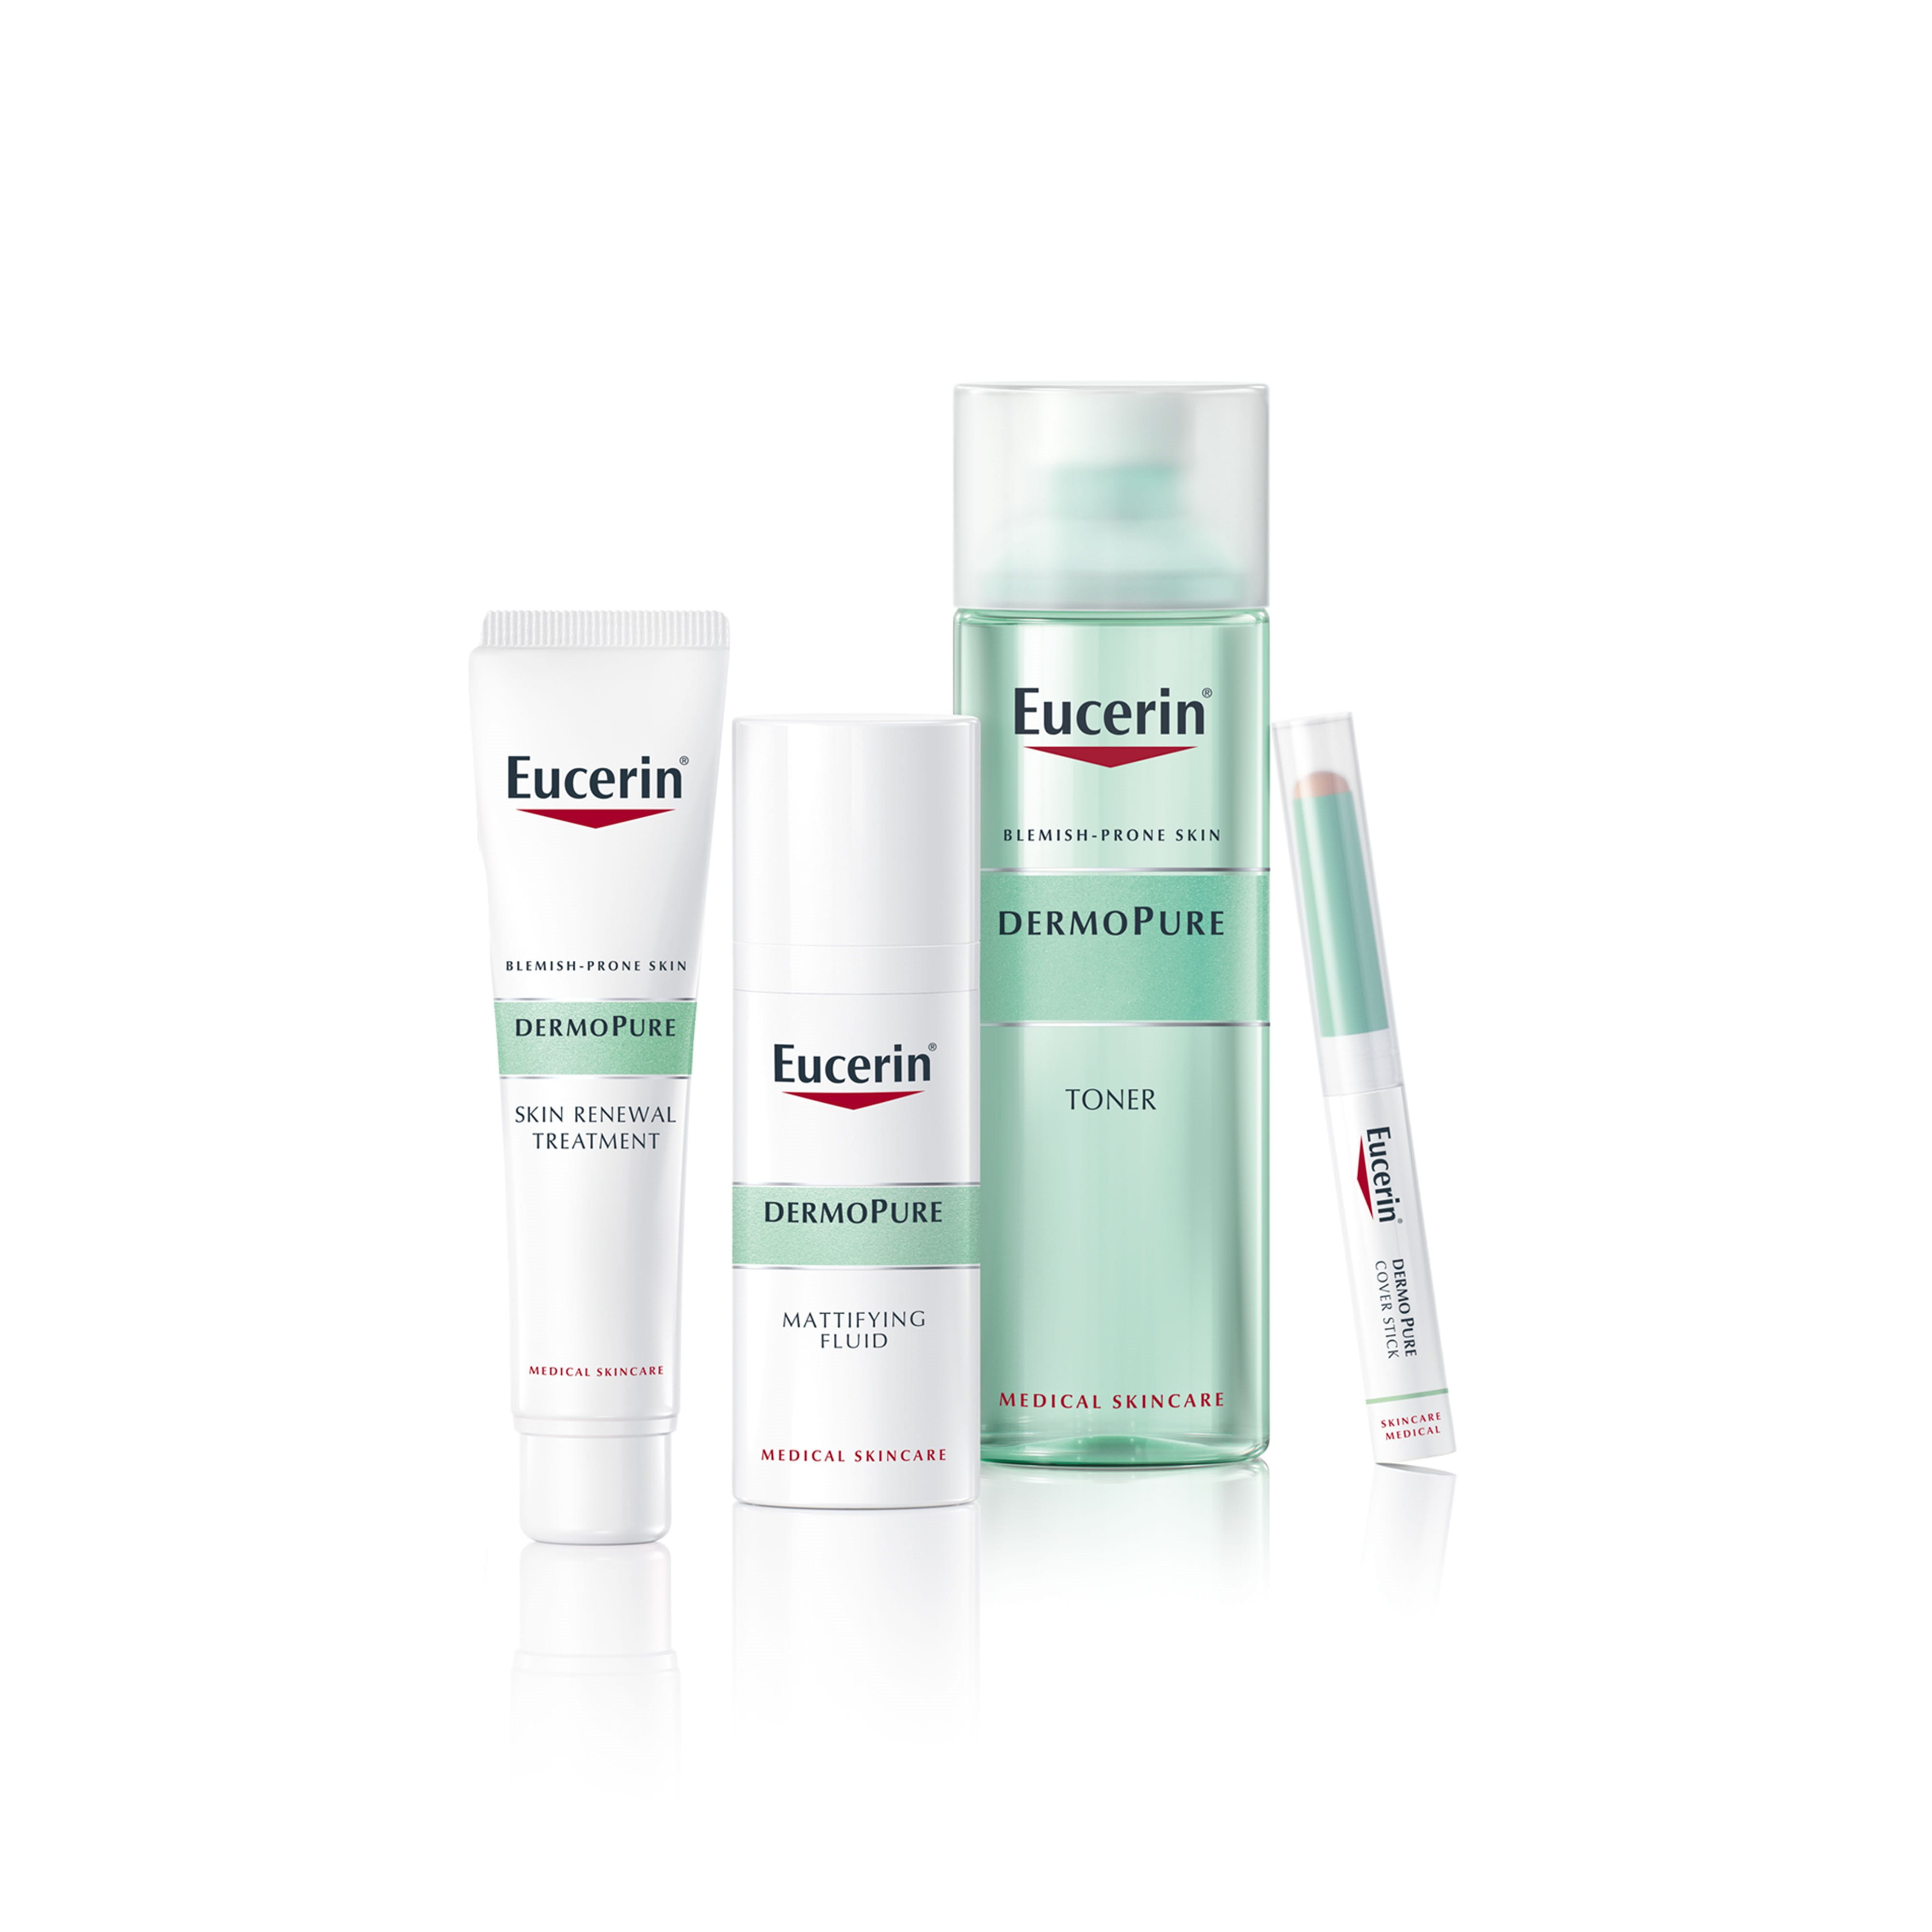 DERMOPURE | care products acne-prone skin | Eucerin